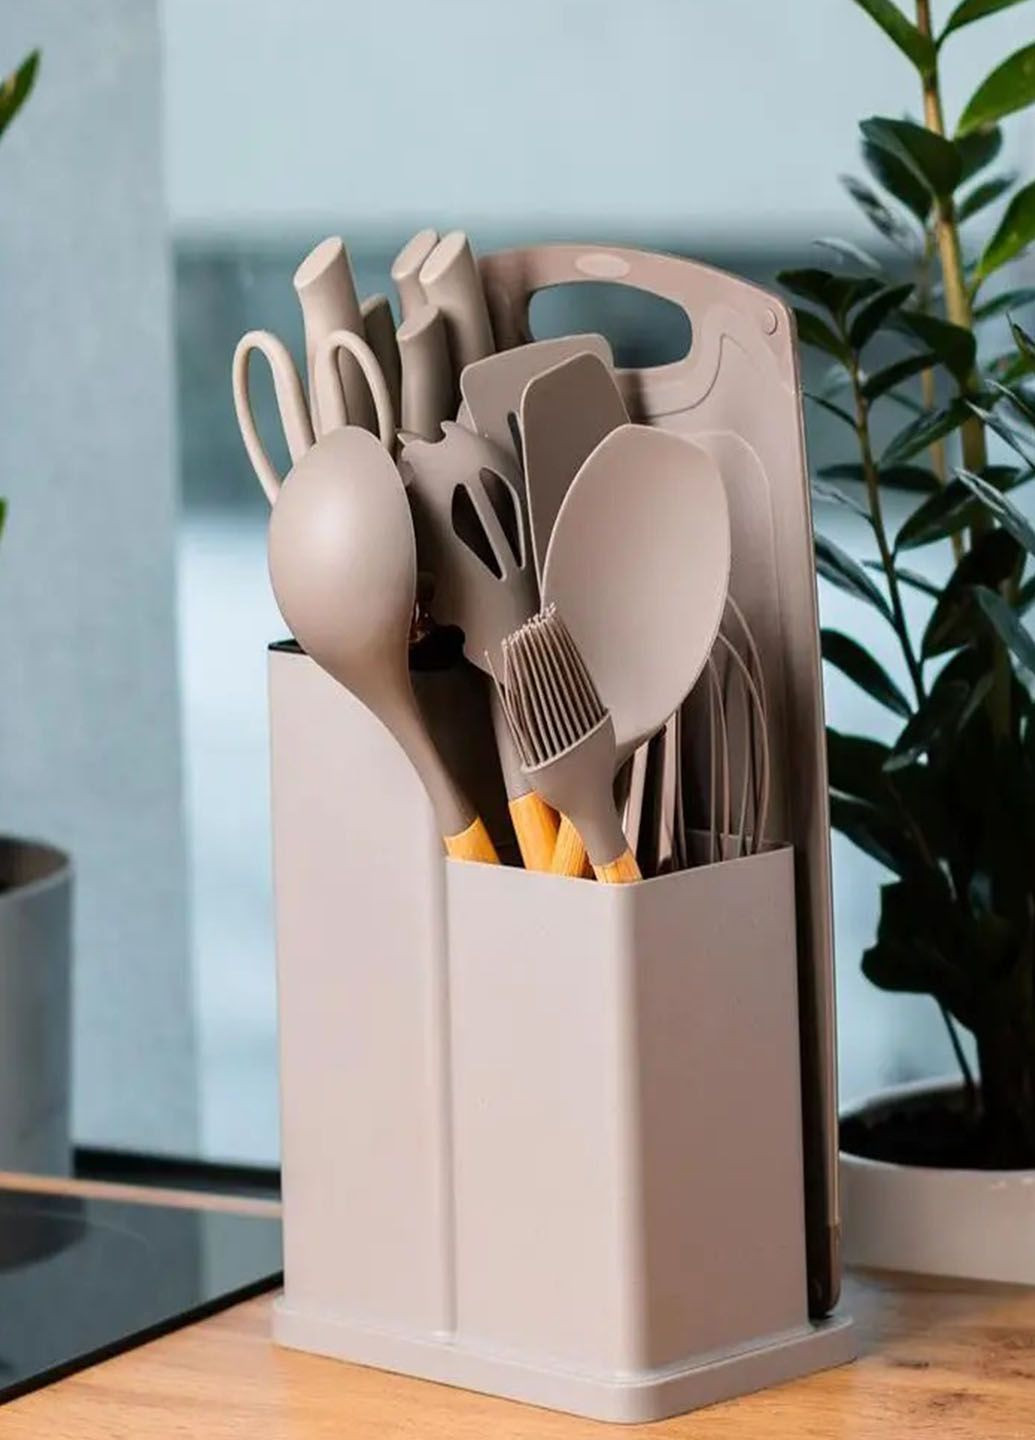 Багатофункціональний набір кухонного приладдя на підставці із силікону з бамбуковою ручкою 19 предметів Good Idea (285719057)